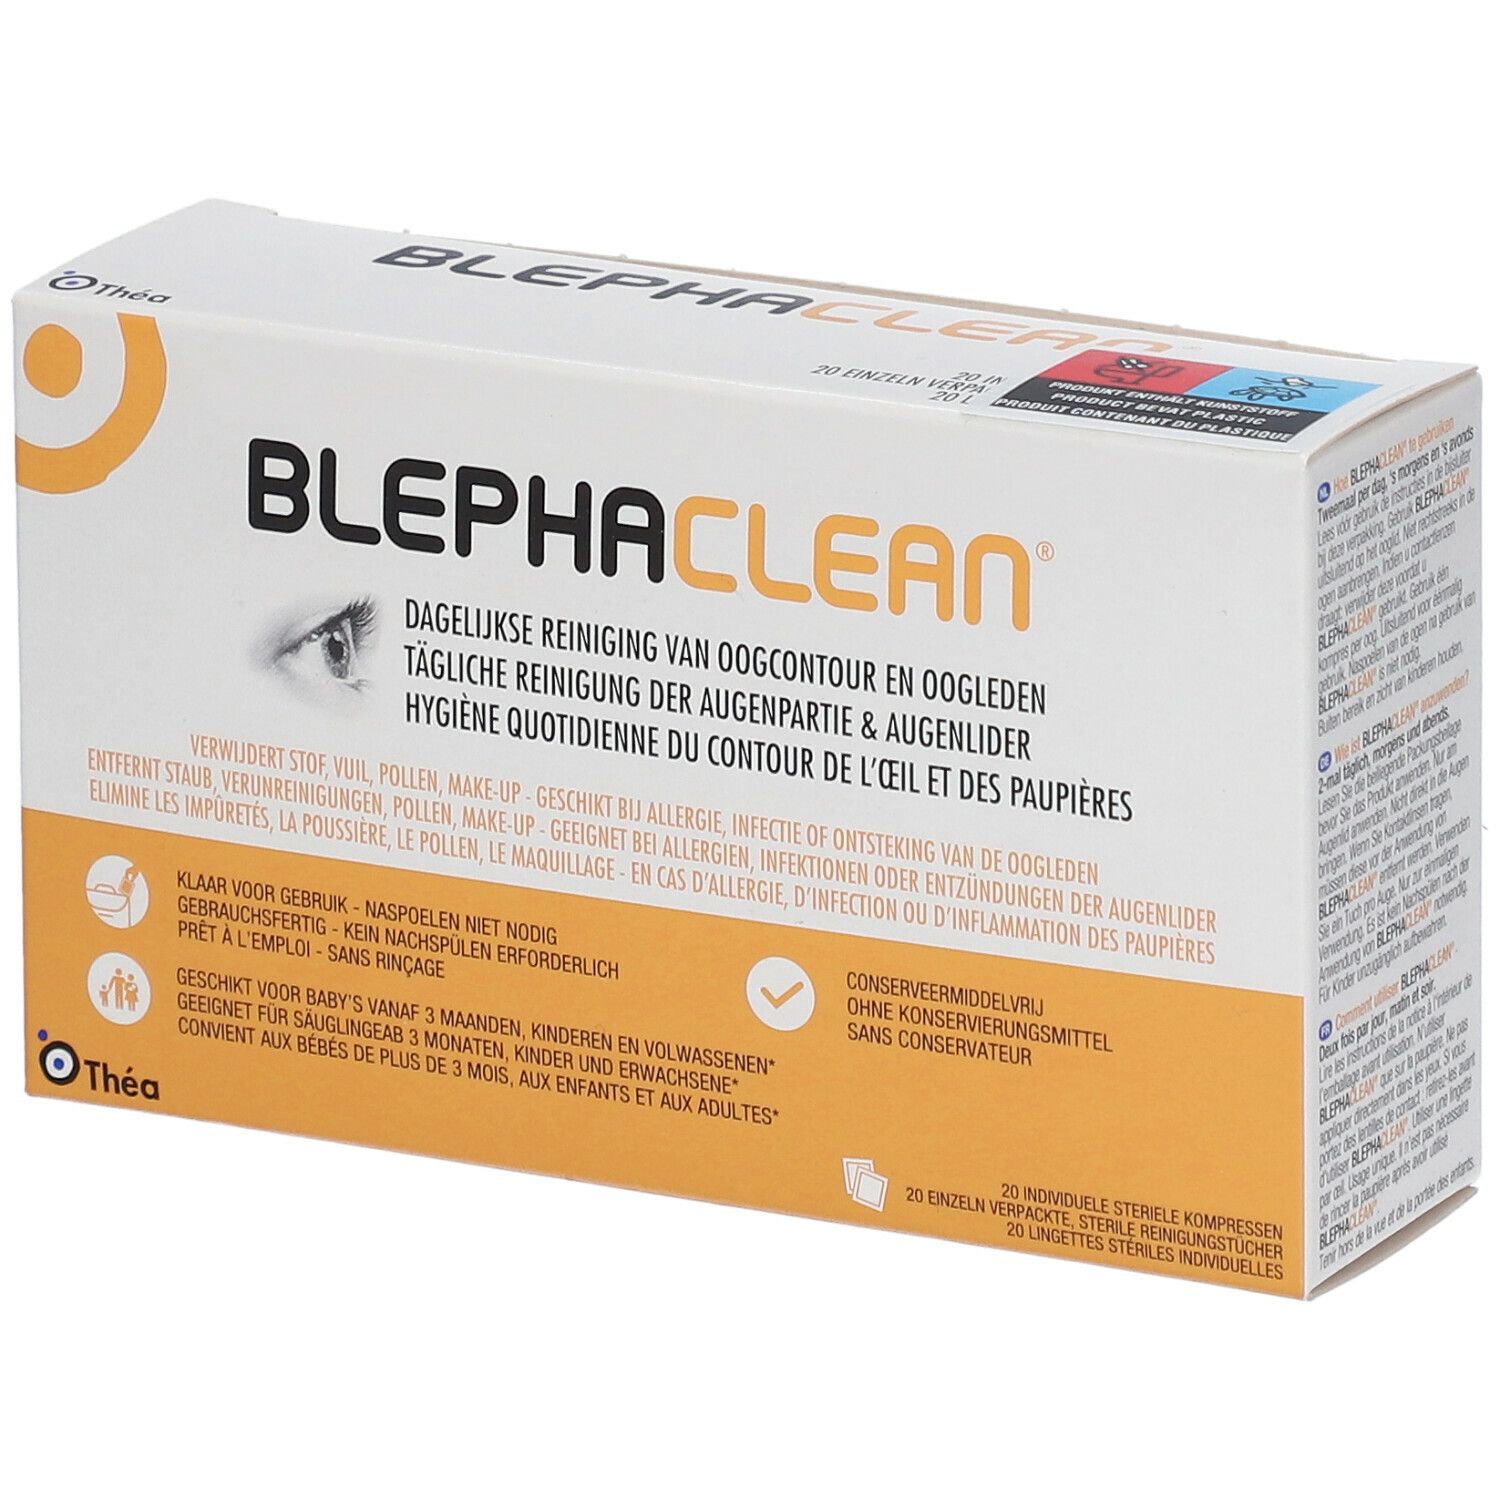 Blephaclean® Lingettes nettoyantes